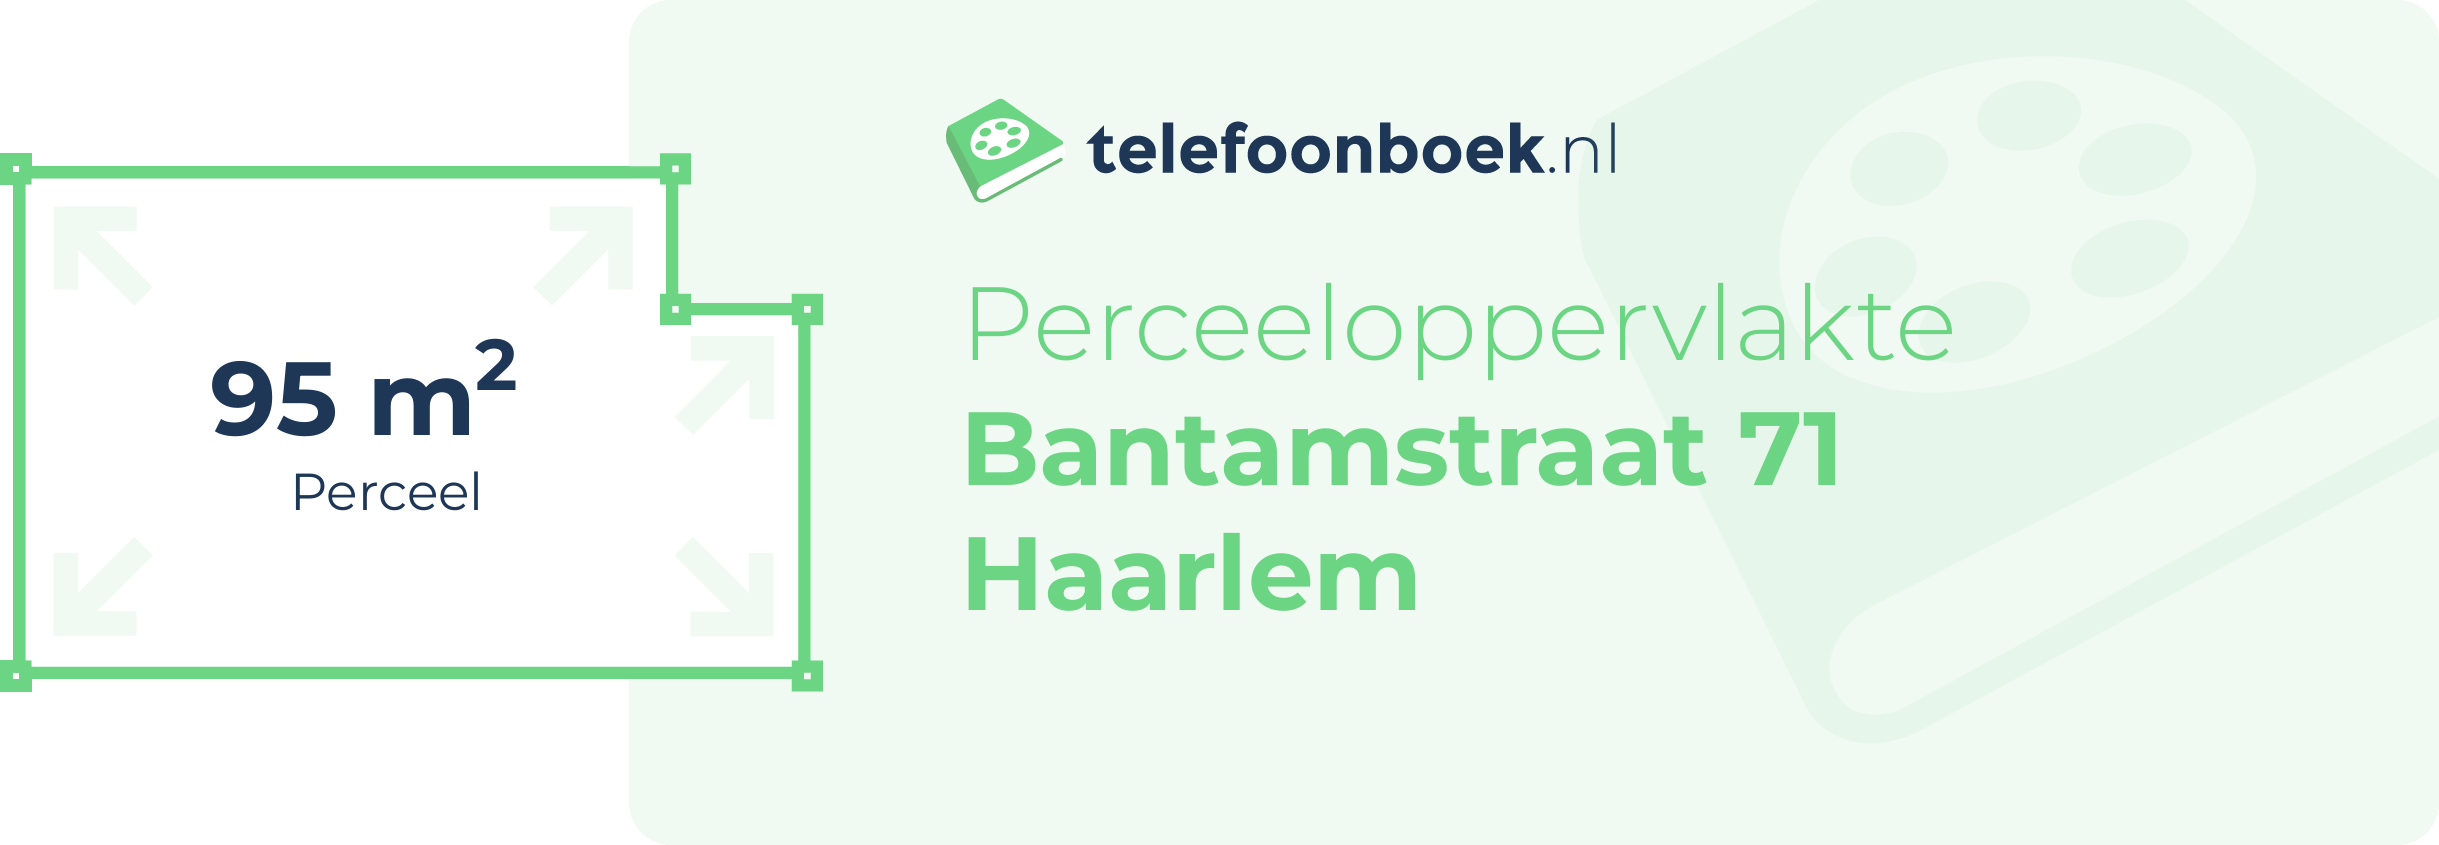 Perceeloppervlakte Bantamstraat 71 Haarlem